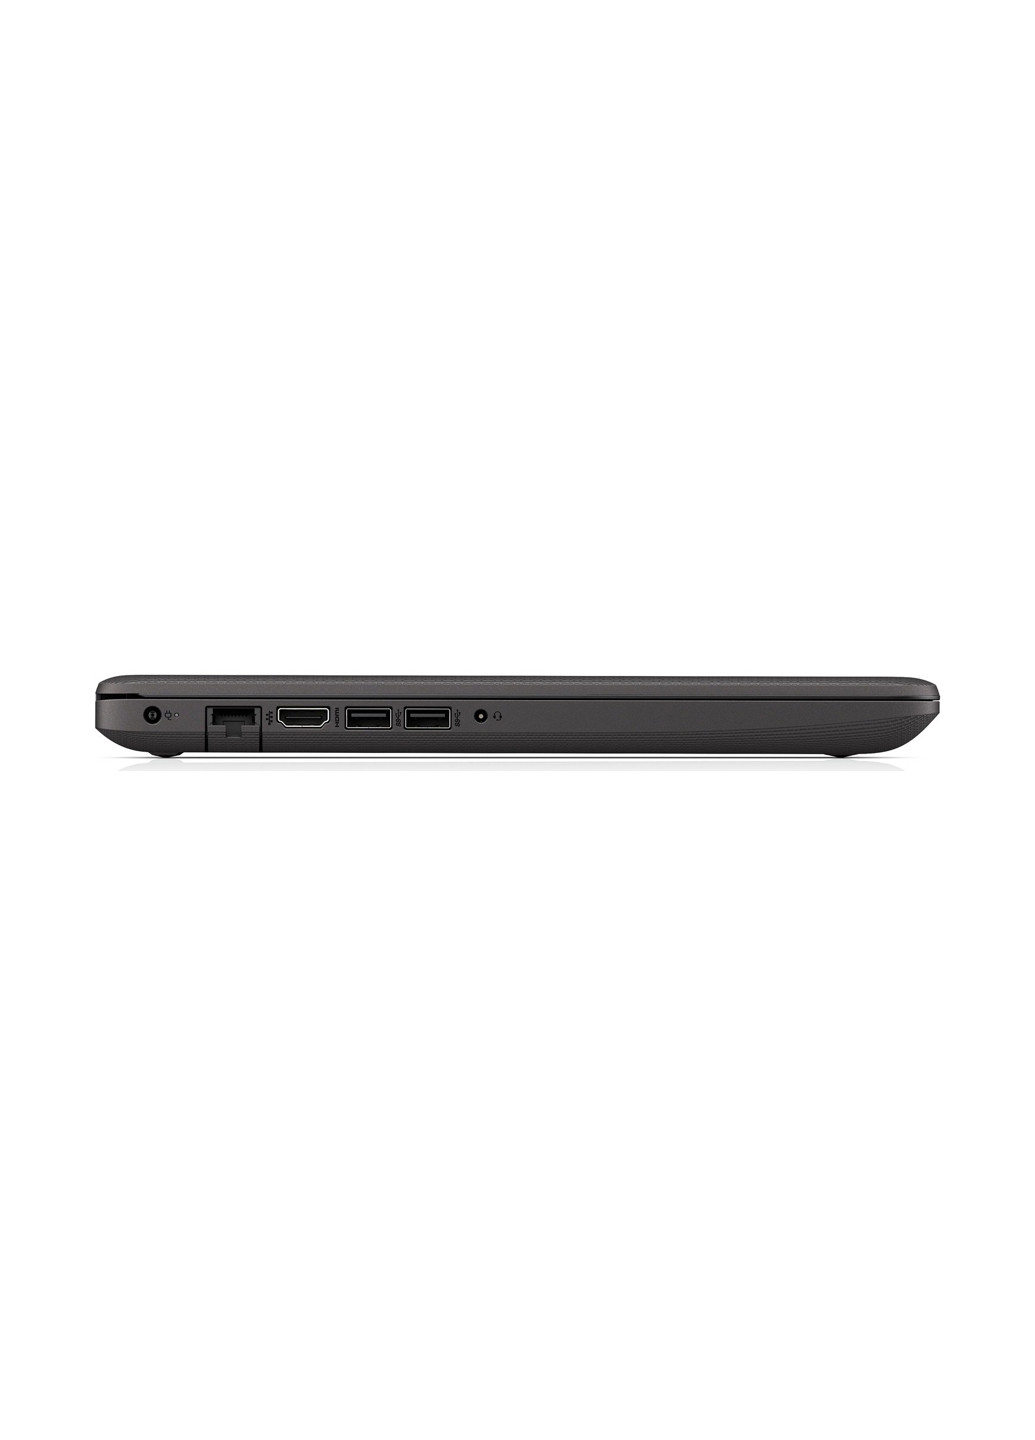 Ноутбук HP 250 g7 (6mp45es) dark silver (136402420)